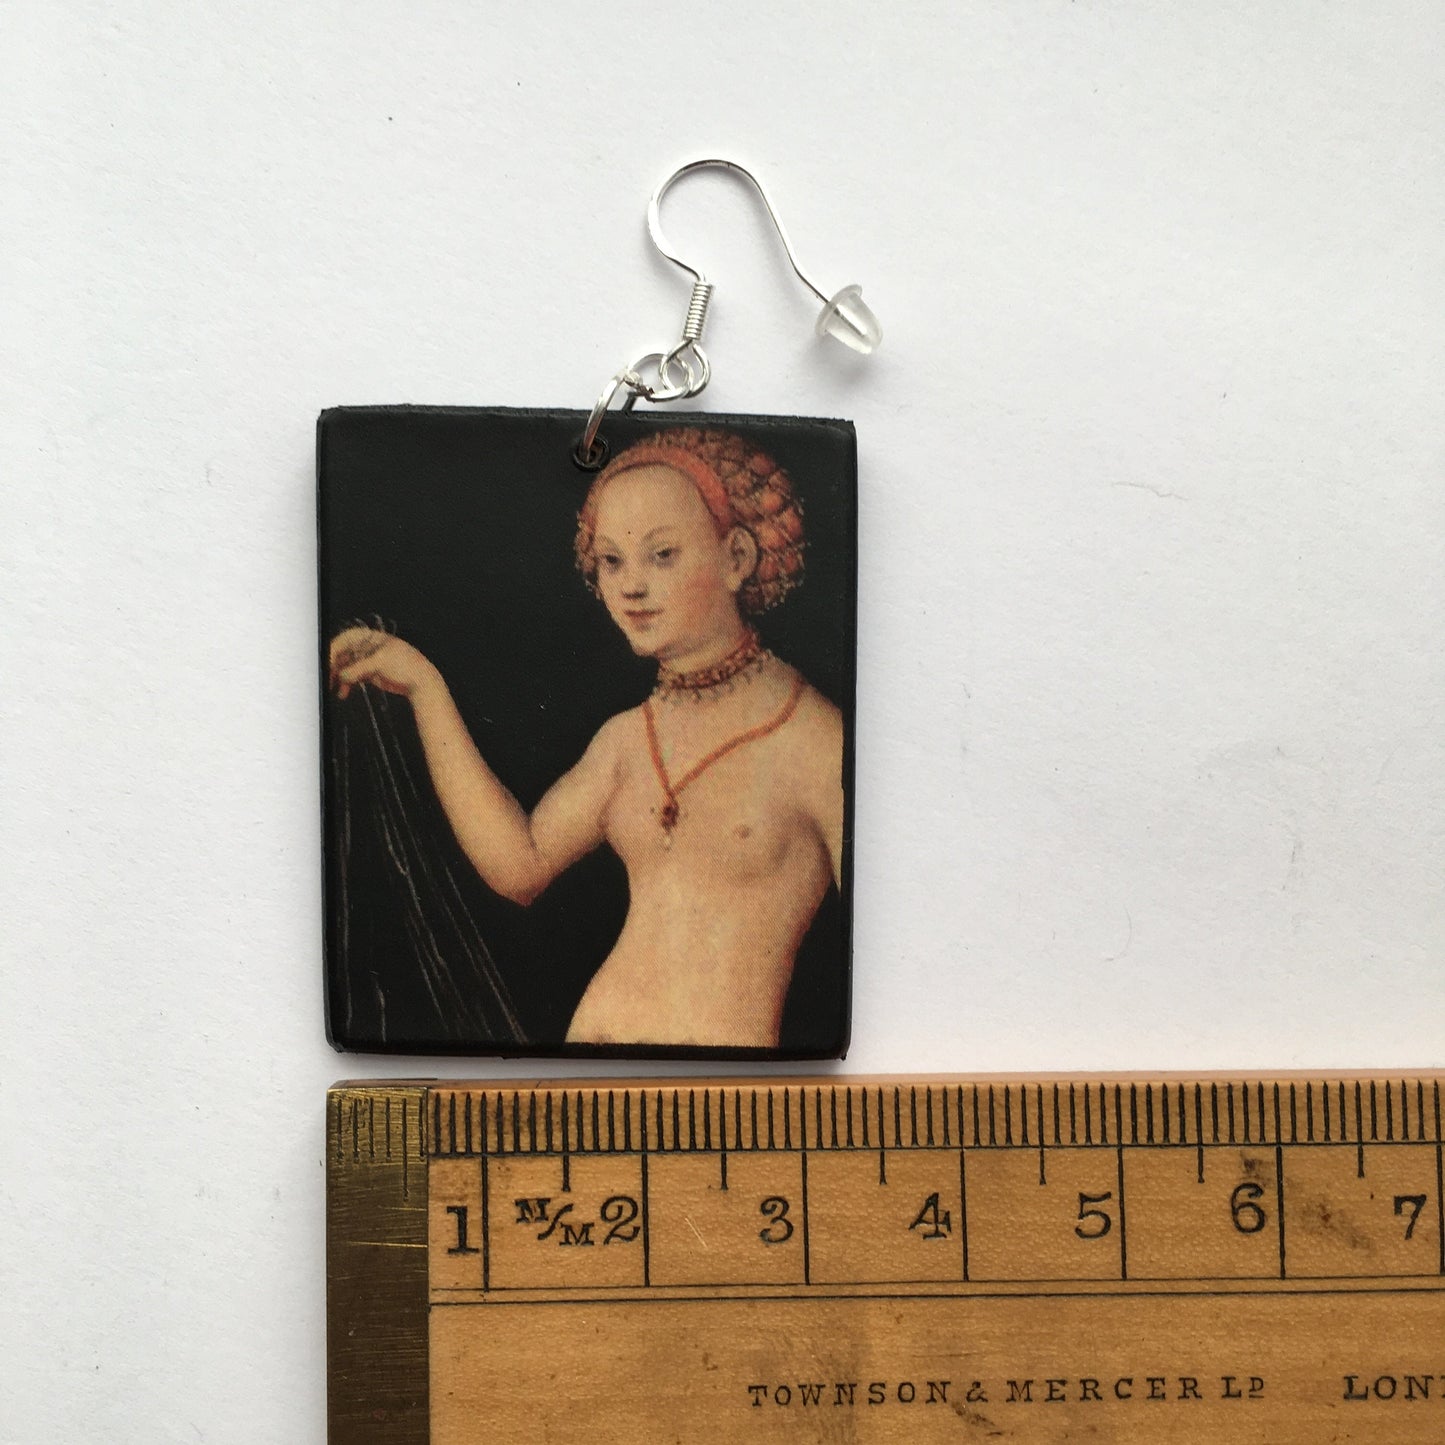 Sensual art earrings. Venus by Cranach.